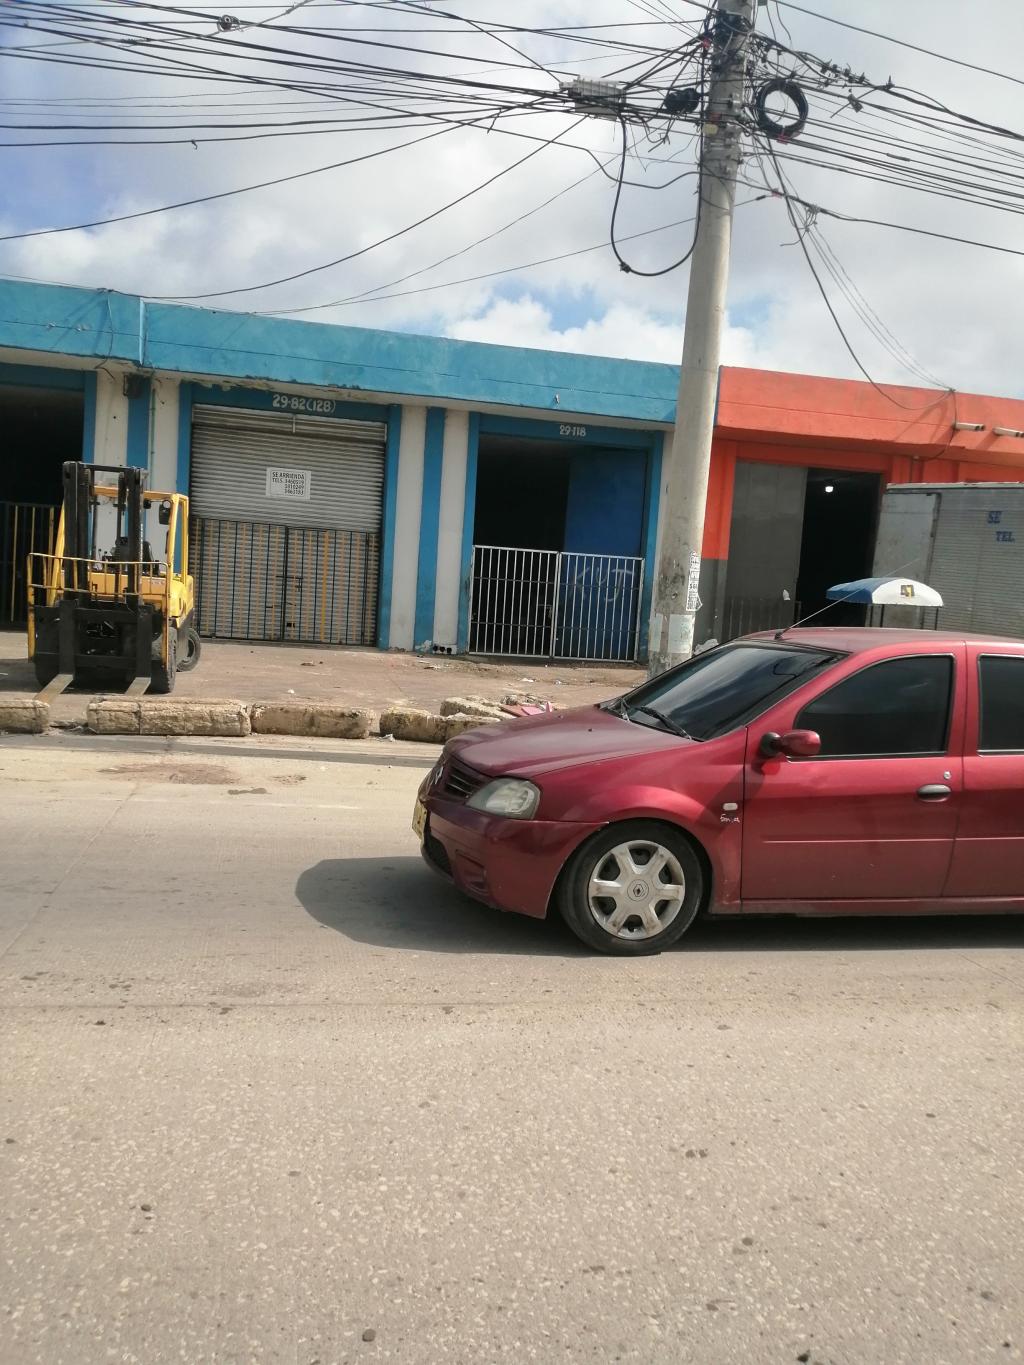 Bodega en Arriendo por Bienco S.A ubicado en Barranquilla. El código del inmueble es: 6677978